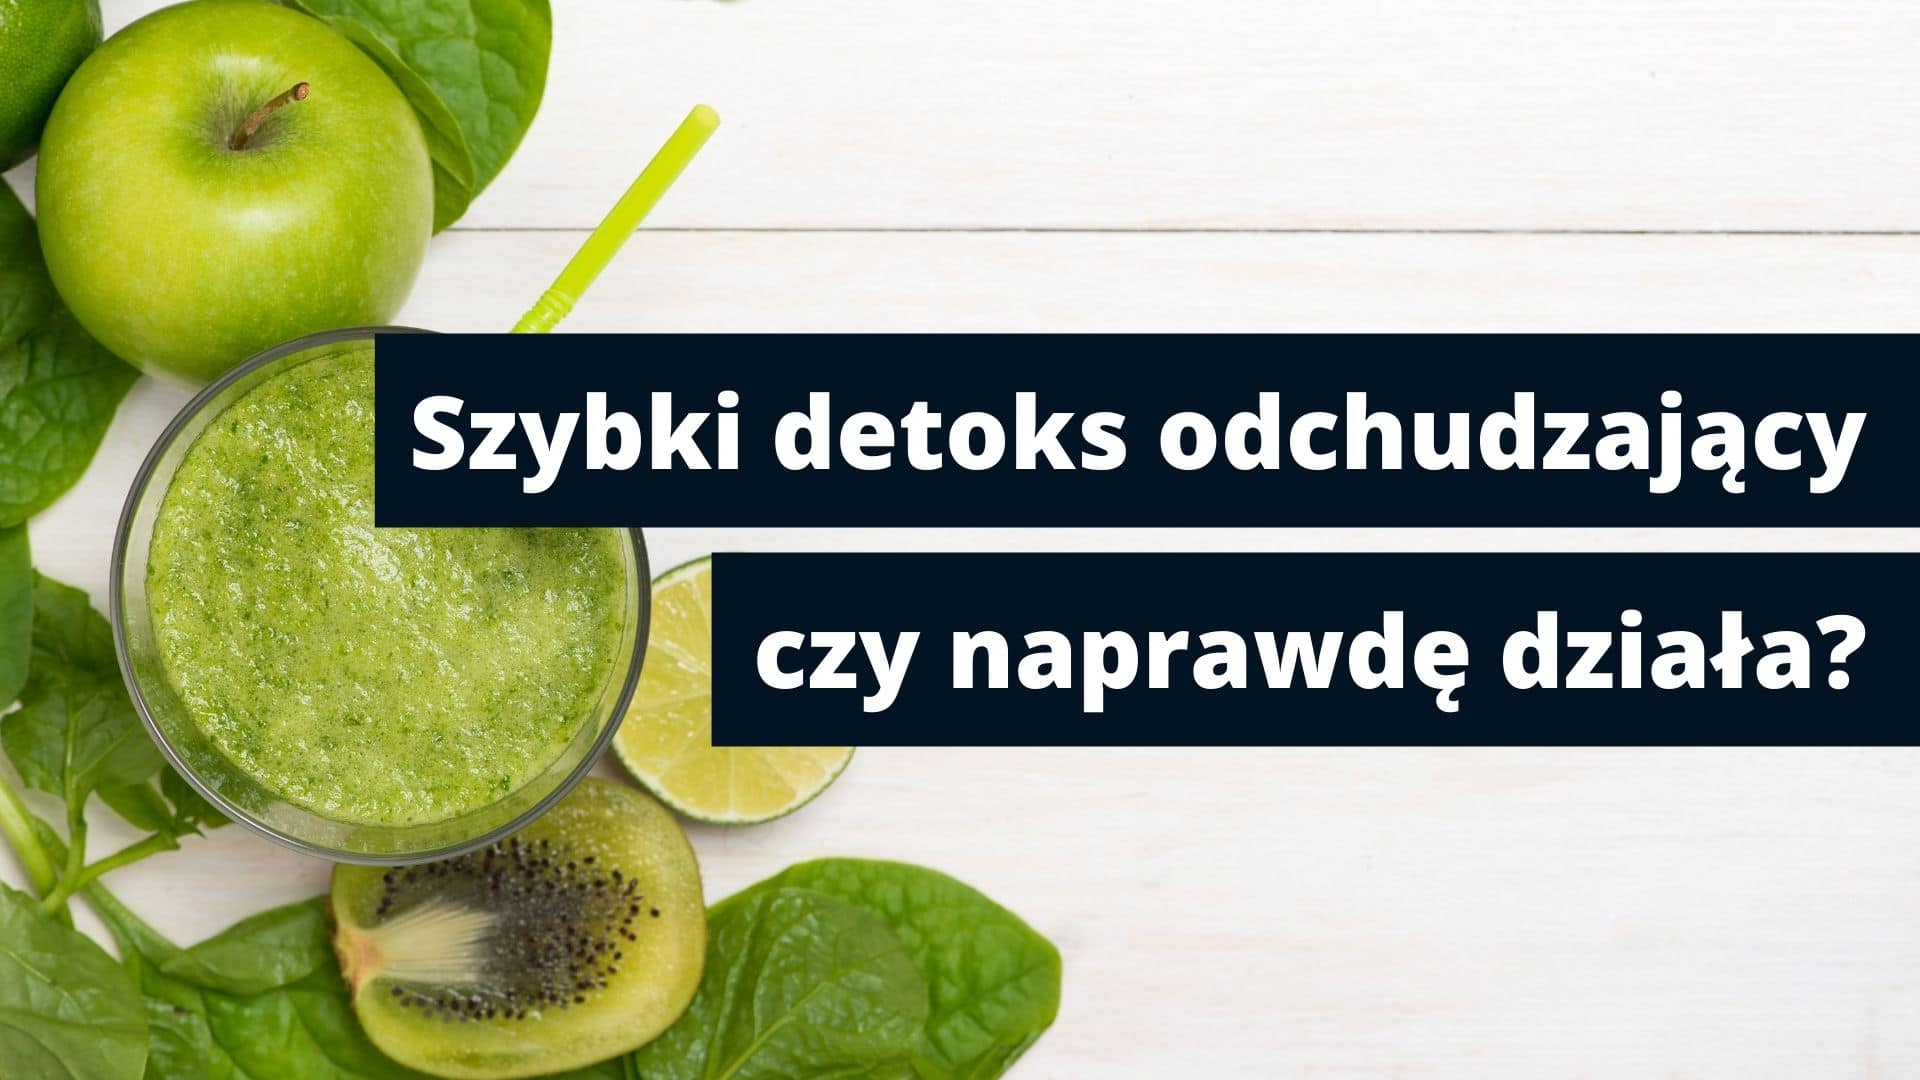 Szklanka zielonego smoothie, świeże warzywa i owoce oraz napisz szybki detoks odchudzający, czy naprawdę działa, który jest tytułem artykułu.